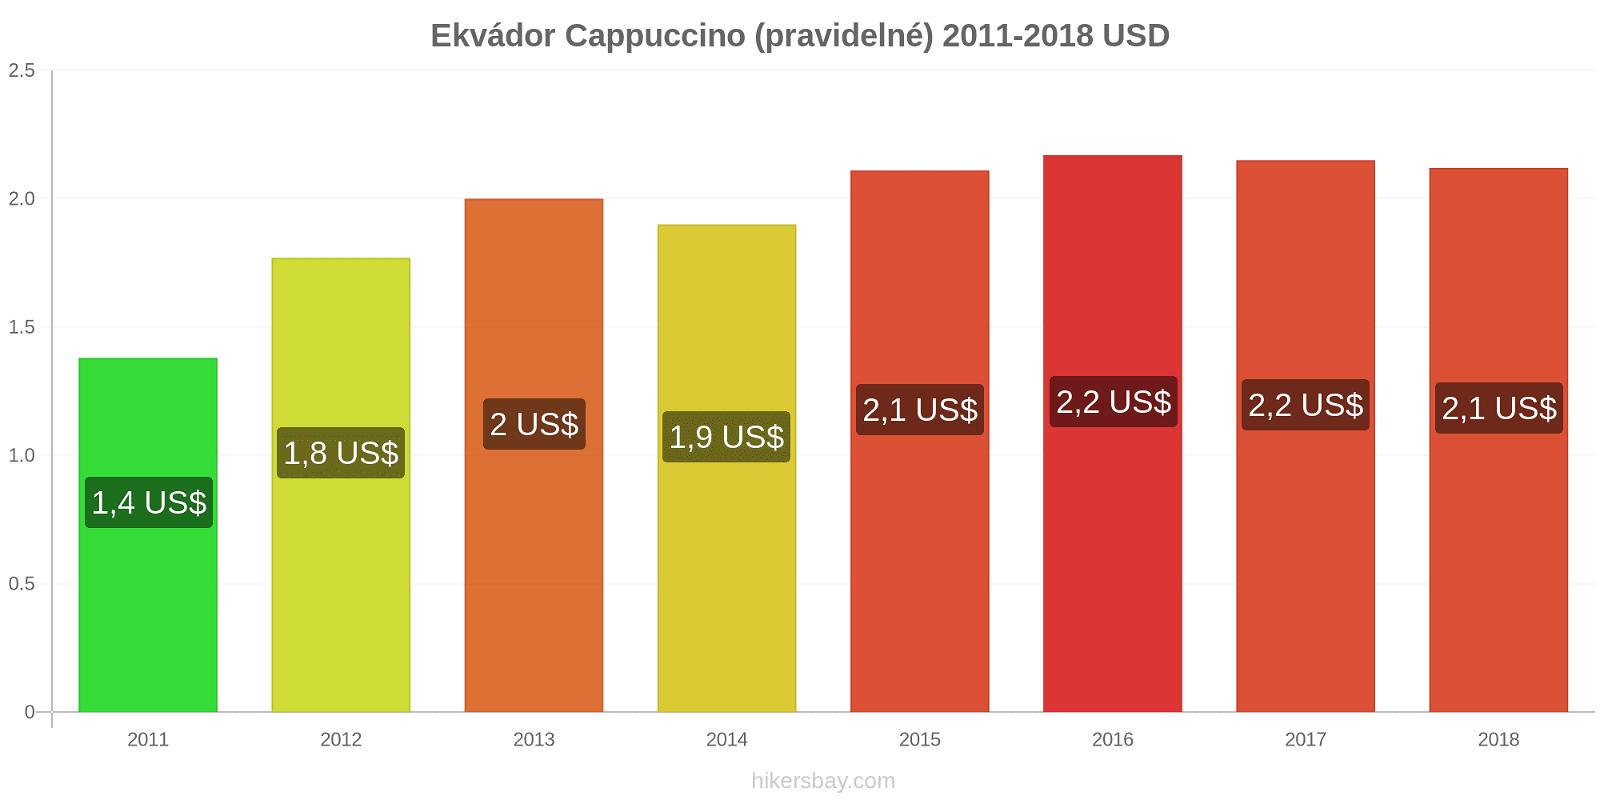 Ekvádor změny cen Cappuccino hikersbay.com